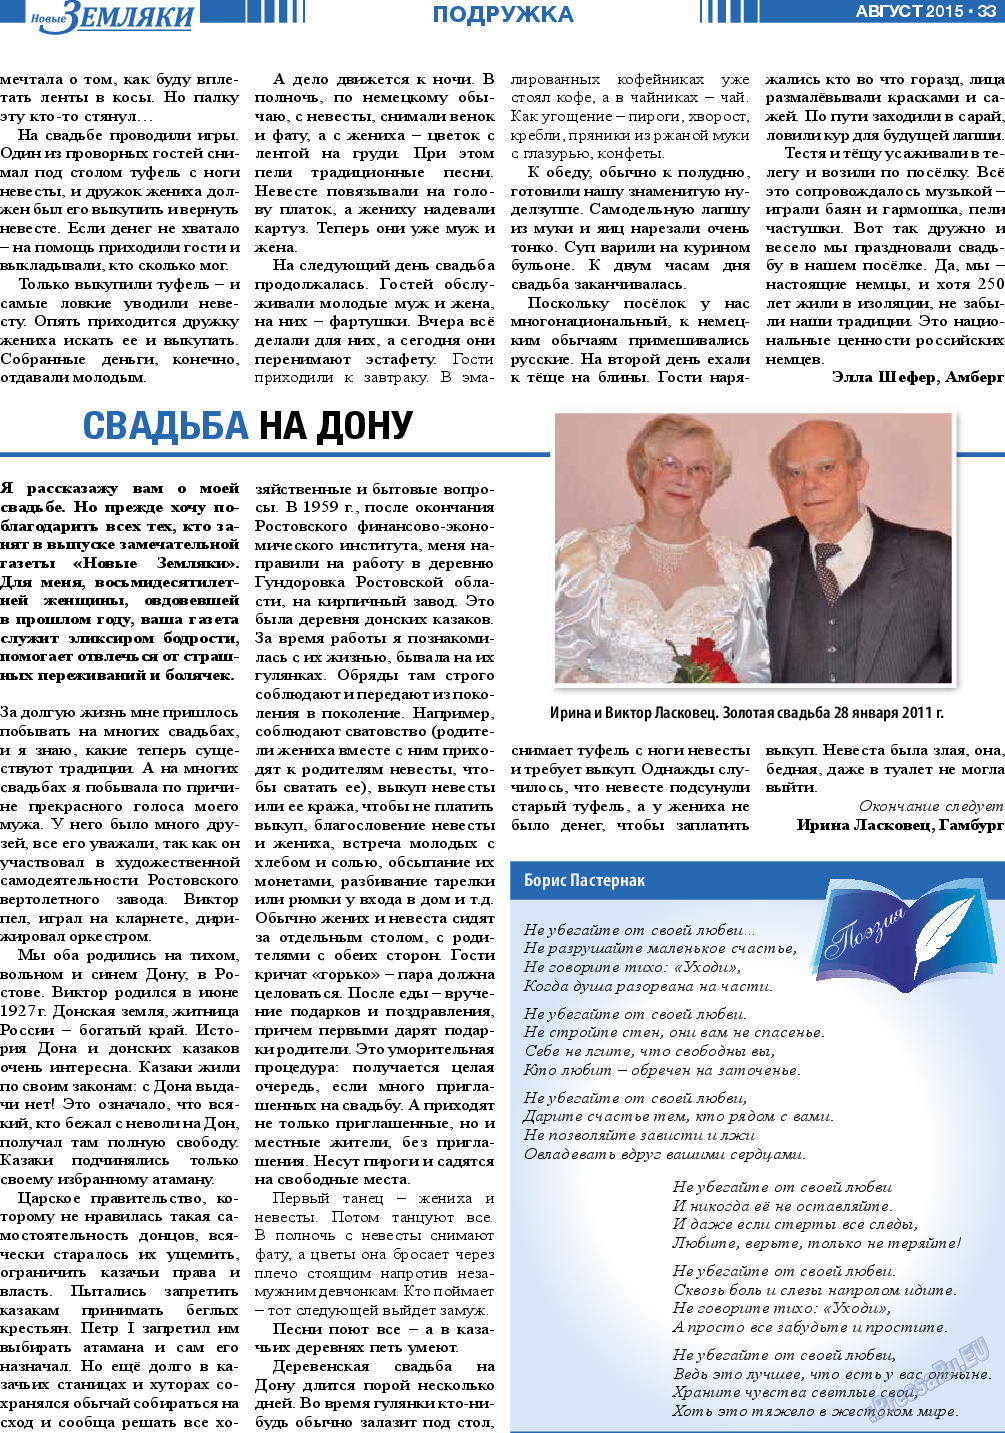 Новые Земляки, газета. 2015 №8 стр.33